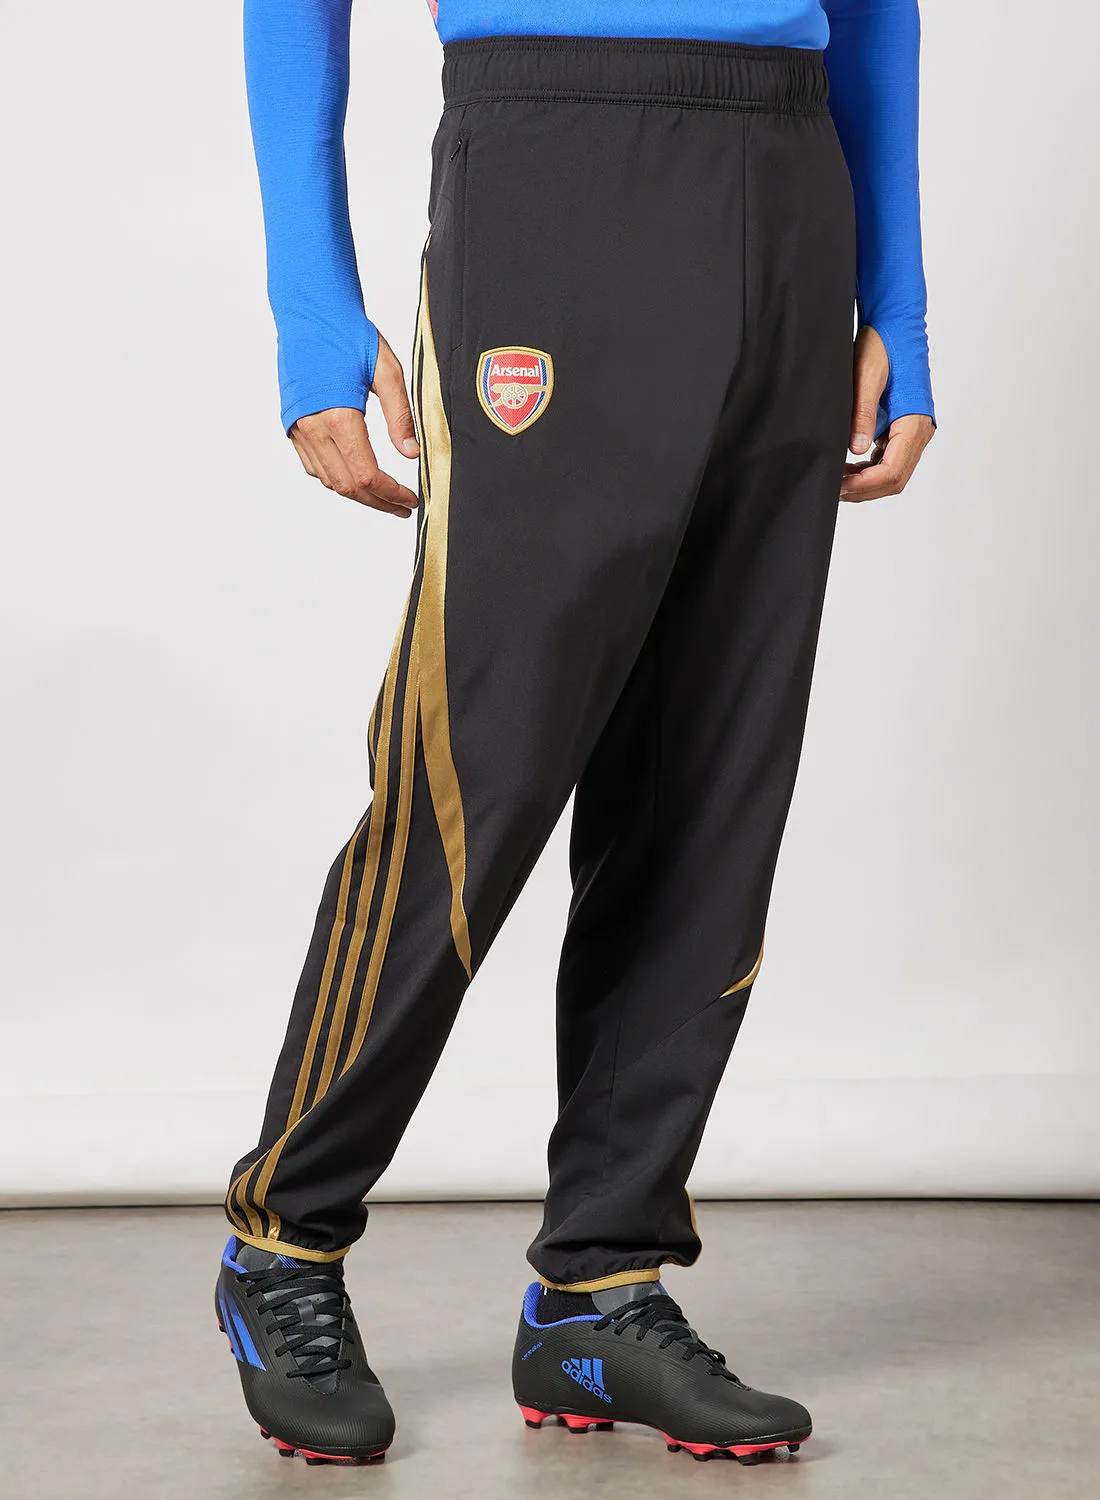 Adidas Arsenal F.C. Teamgeist Woven Football Track Pants